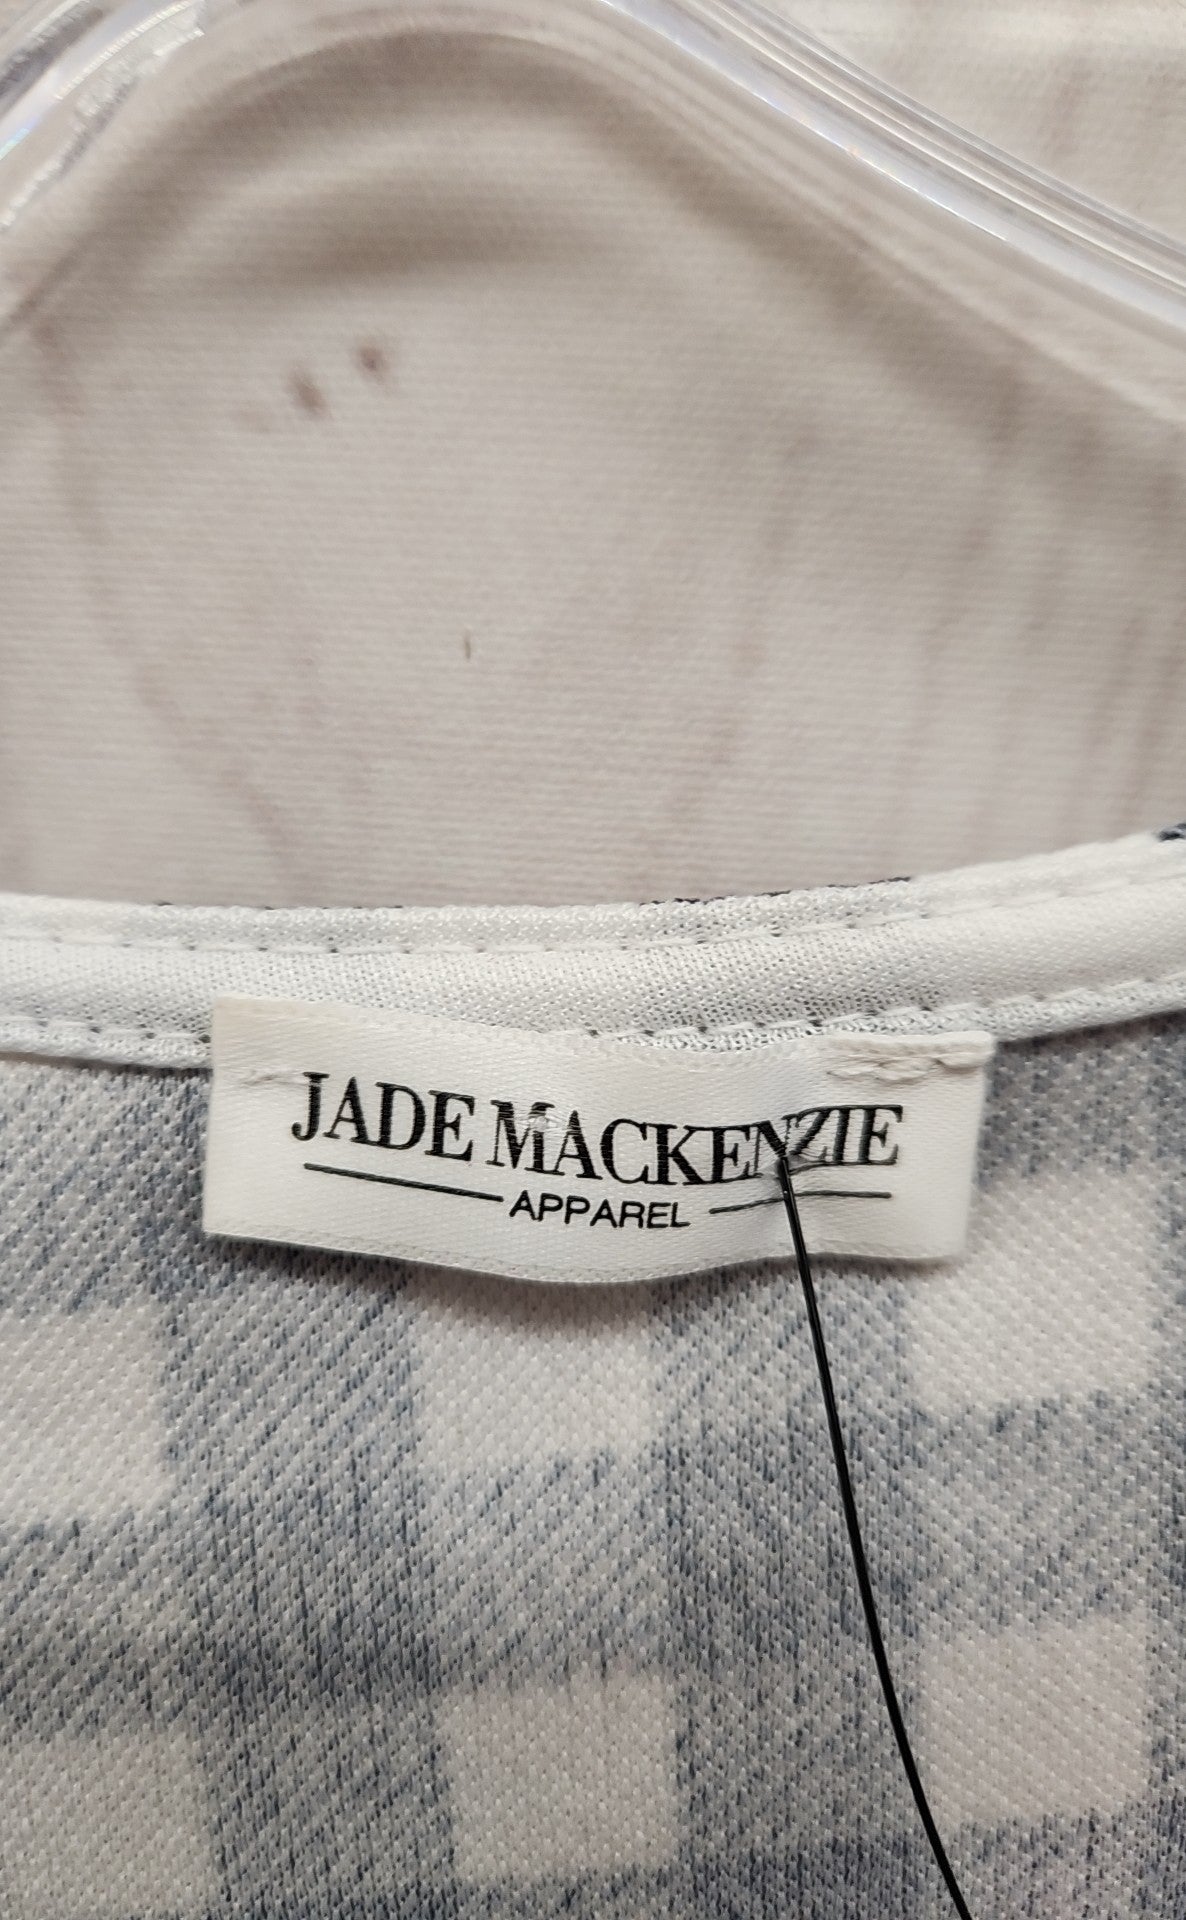 Jade Mackenzie Women's Size M Navy Checkered Dress